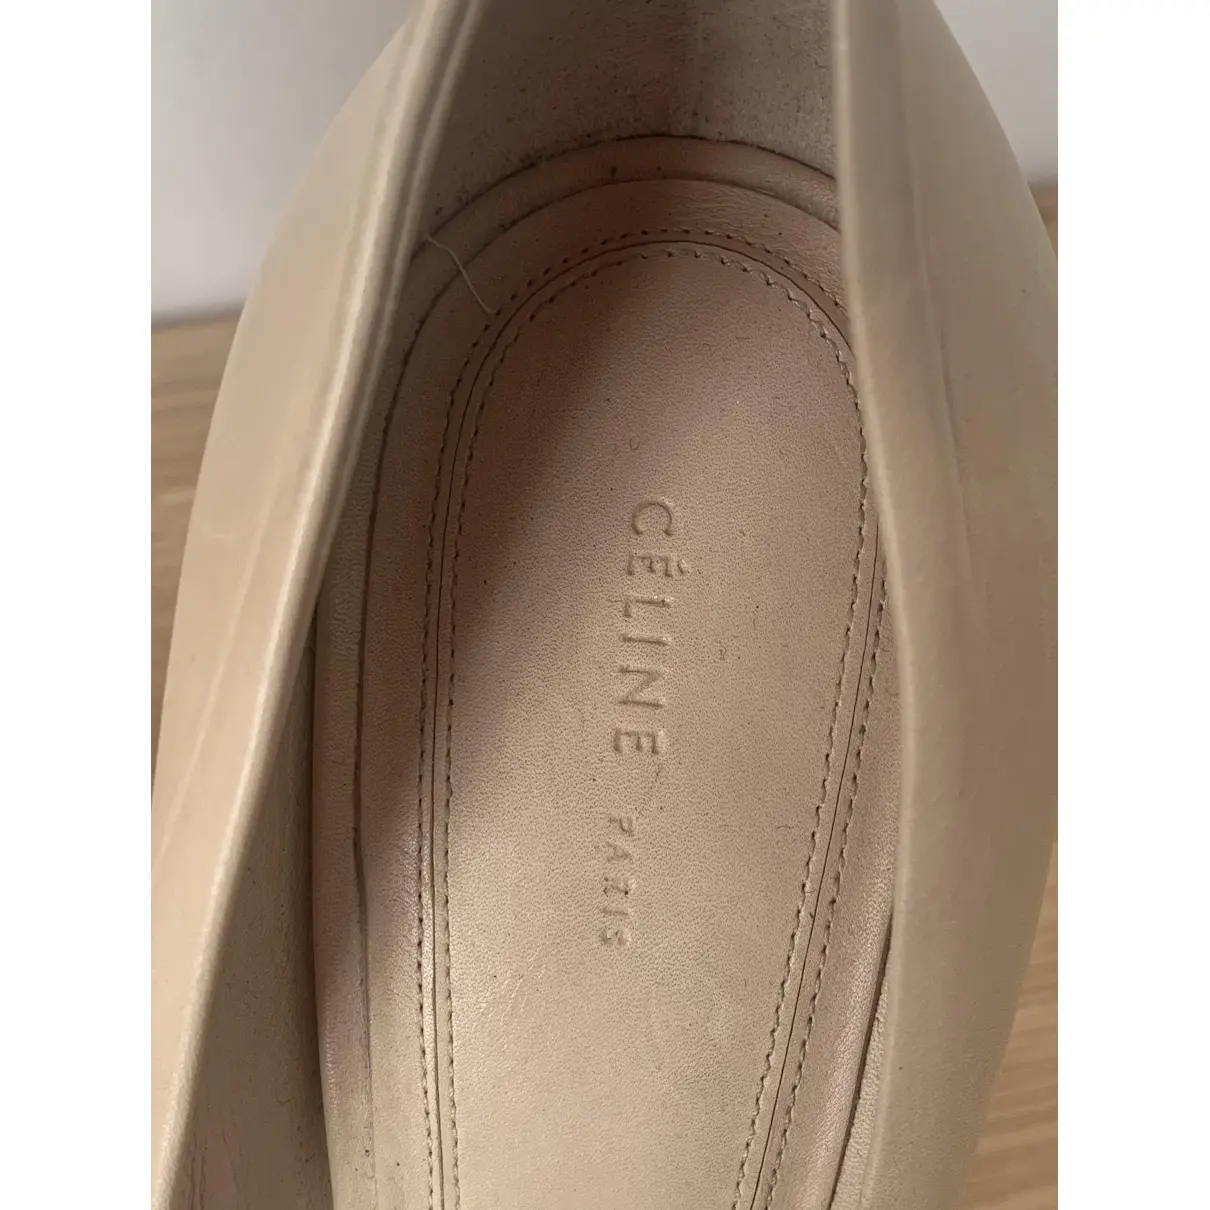 Leather heels Celine